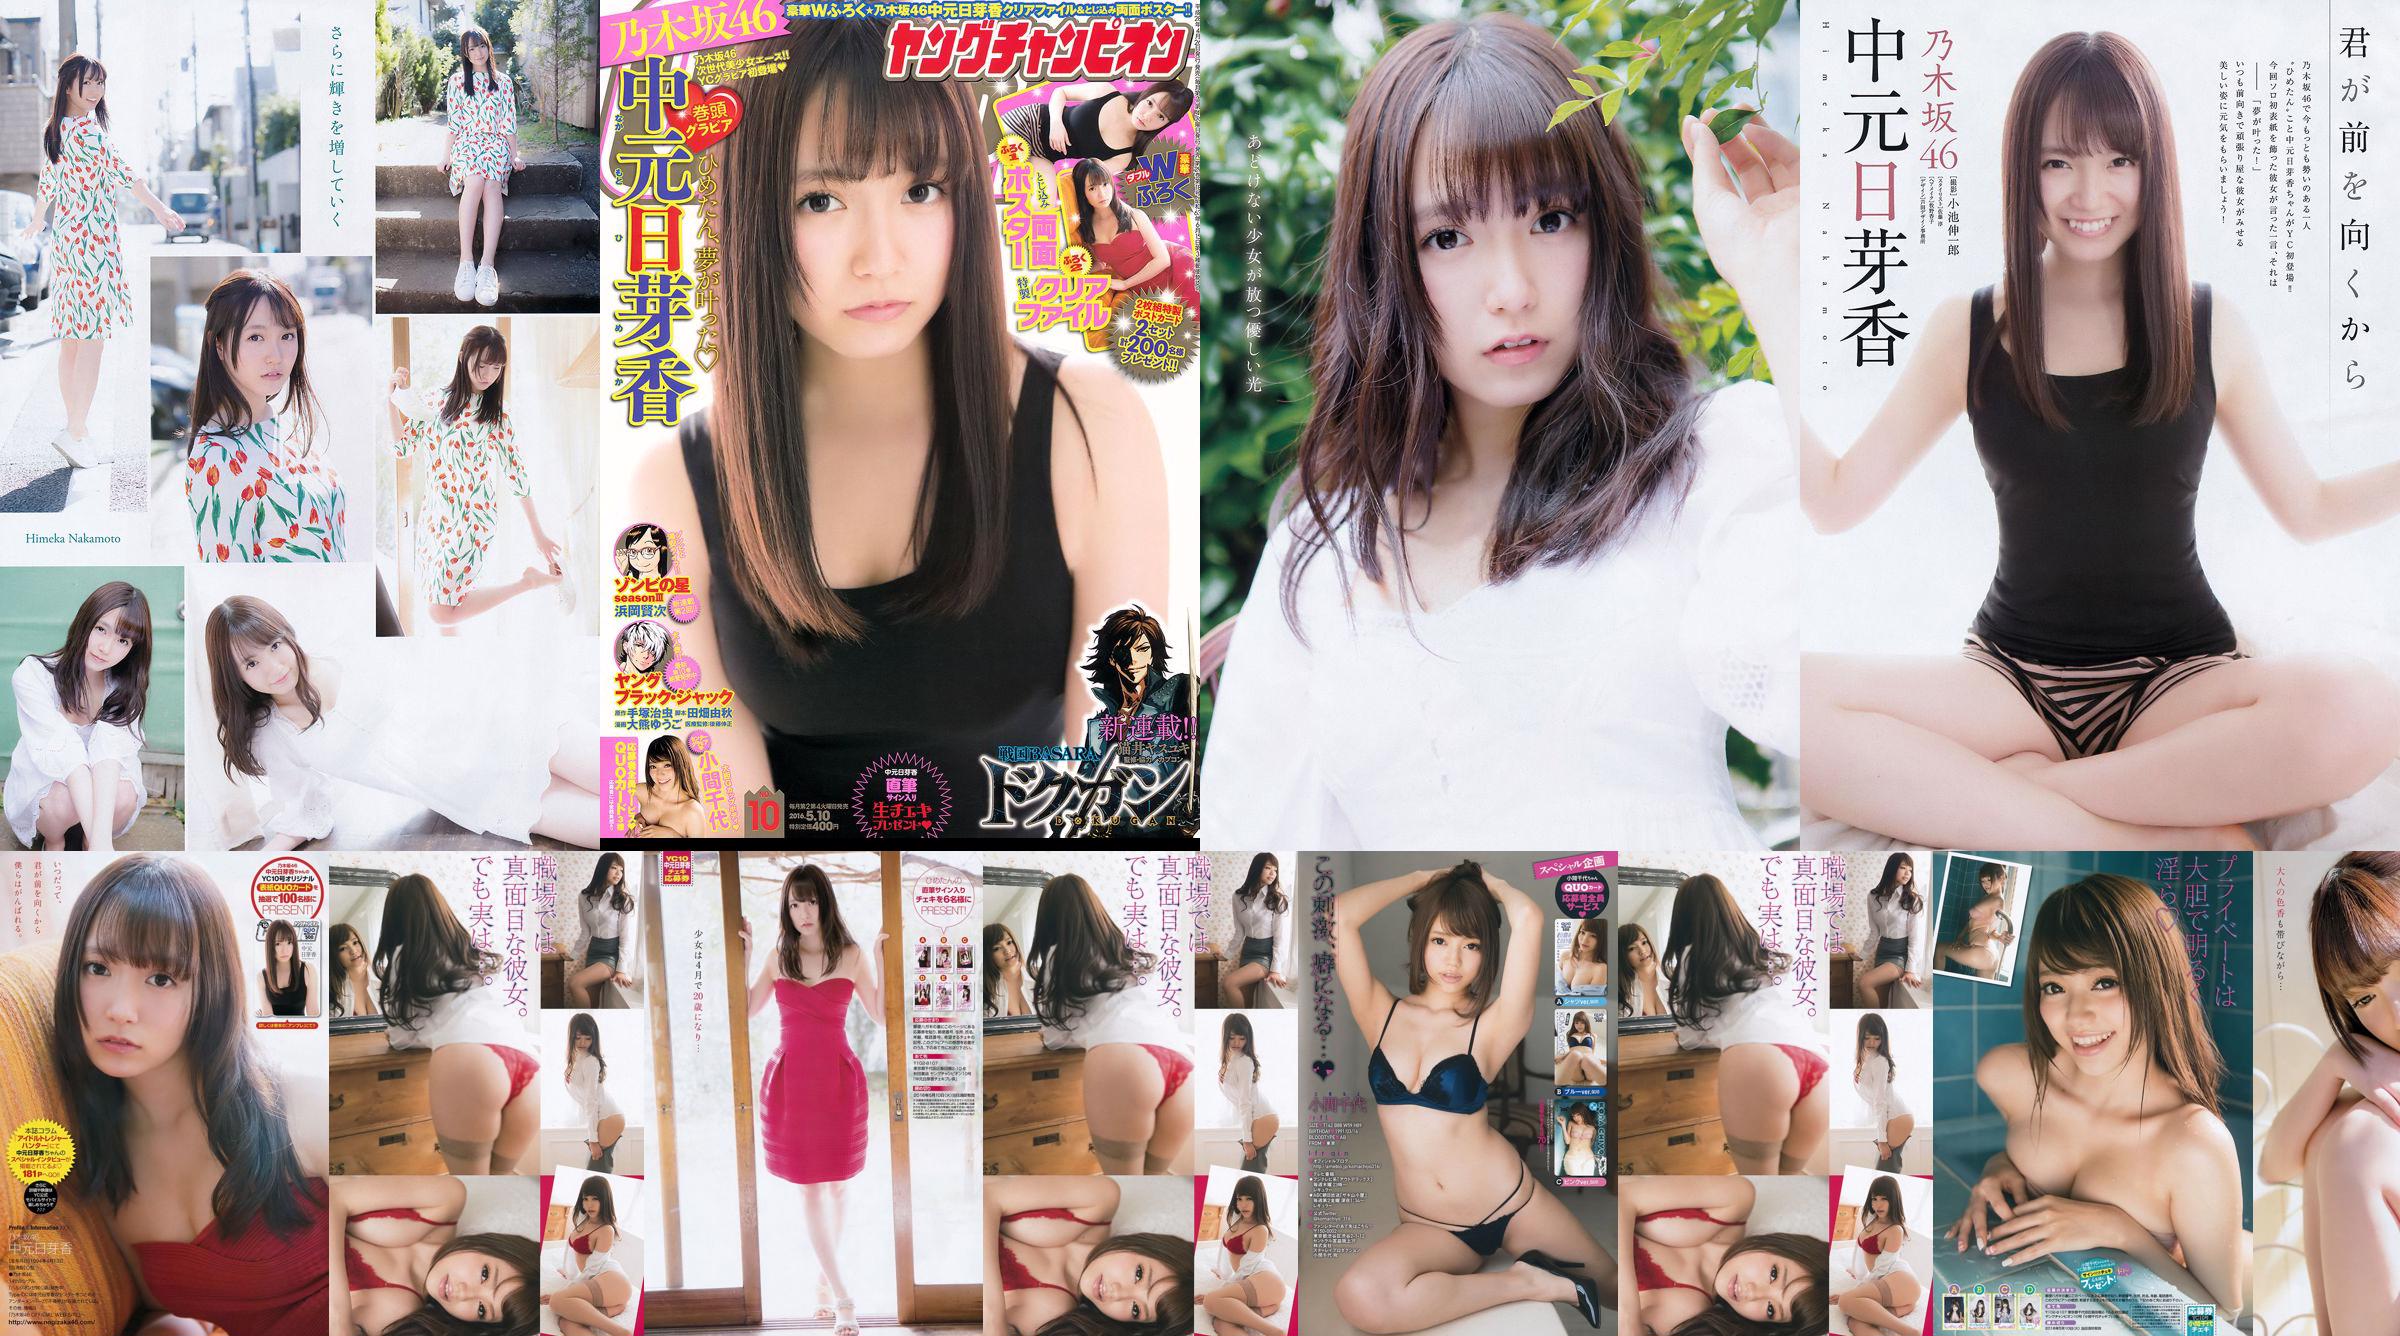 [Young Champion] Nakamoto Nichiko Koma Chiyo 2016 No.10 Photo Magazine No.83dde1 Page 1